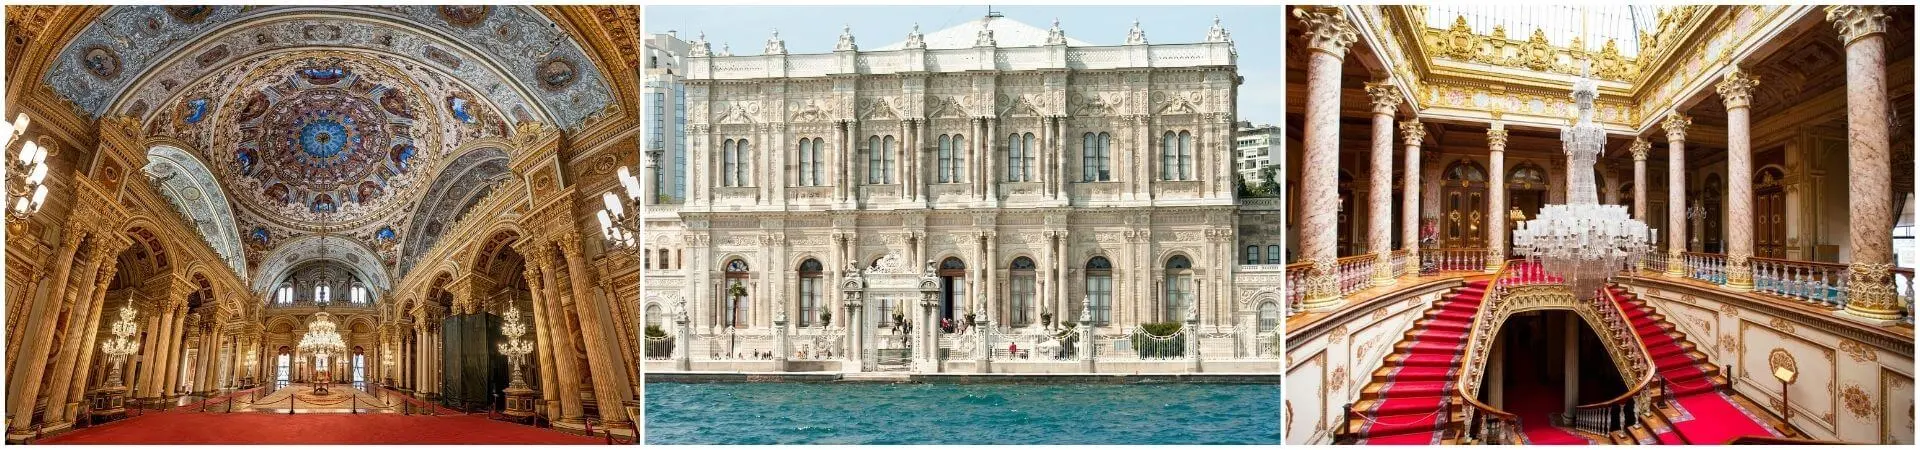 Visita guiada al palacio de Dolmabahce